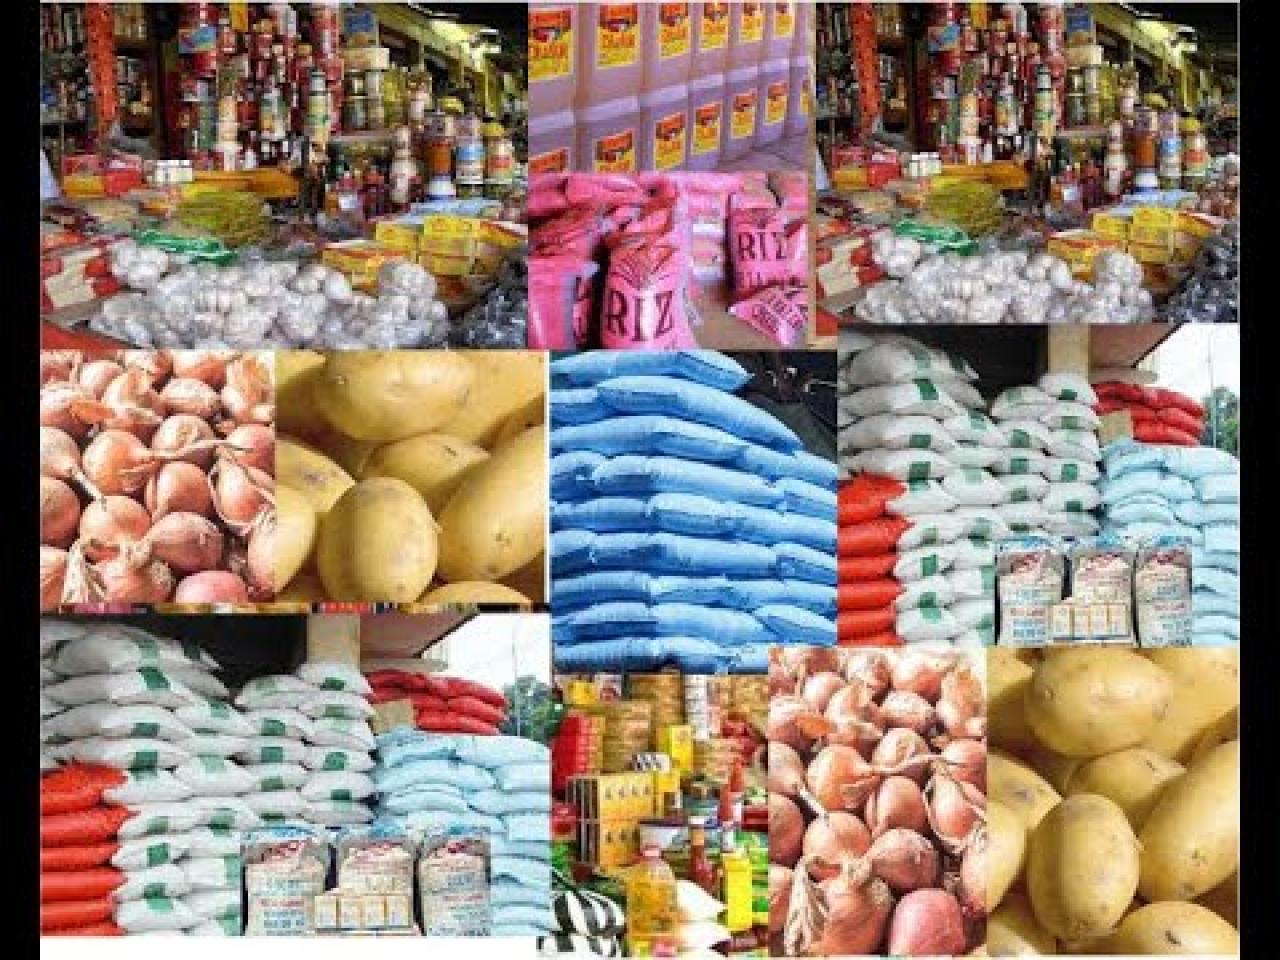 Les prix mondiaux des produits alimentaires ont baissé en juillet, selon la FAO